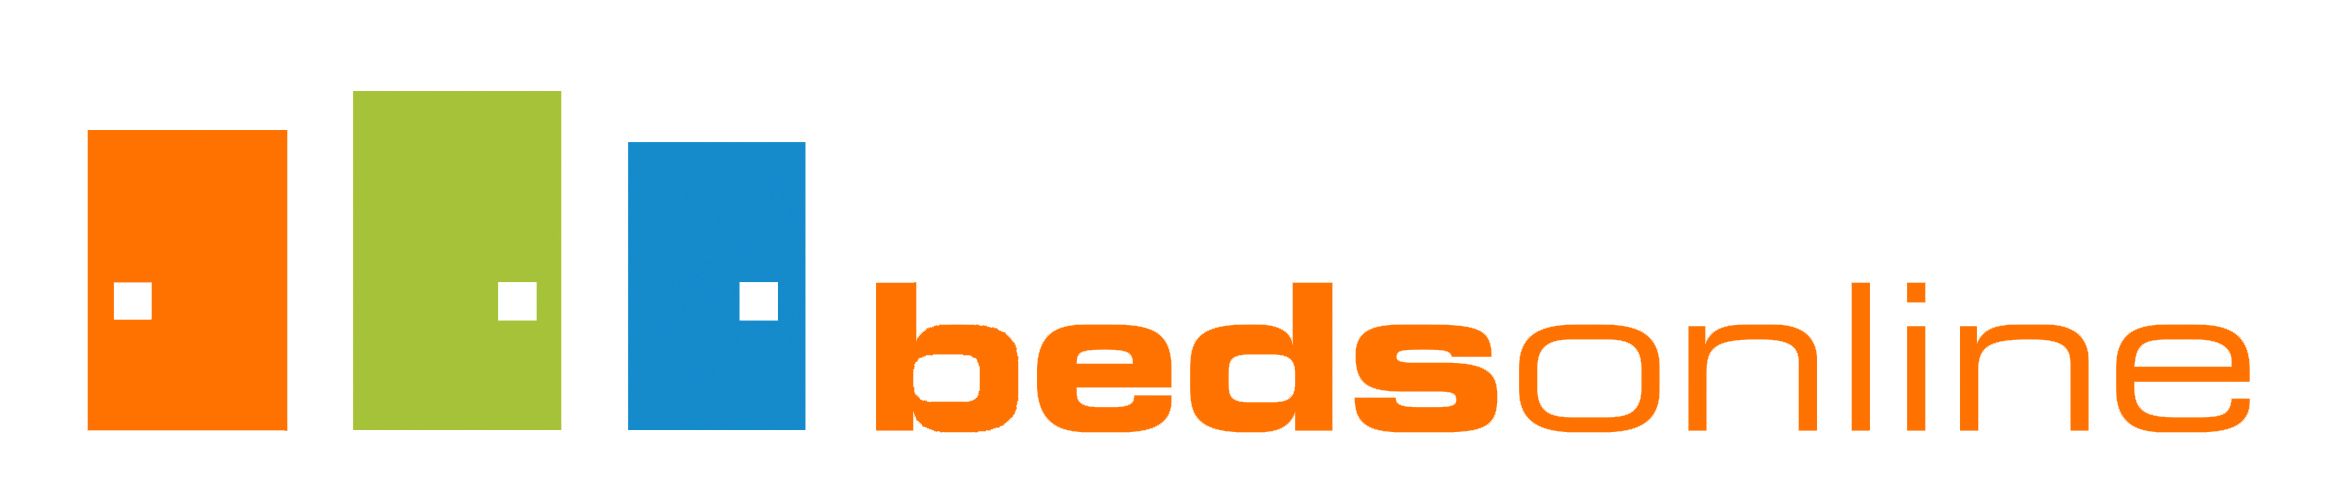 logo bedsonline